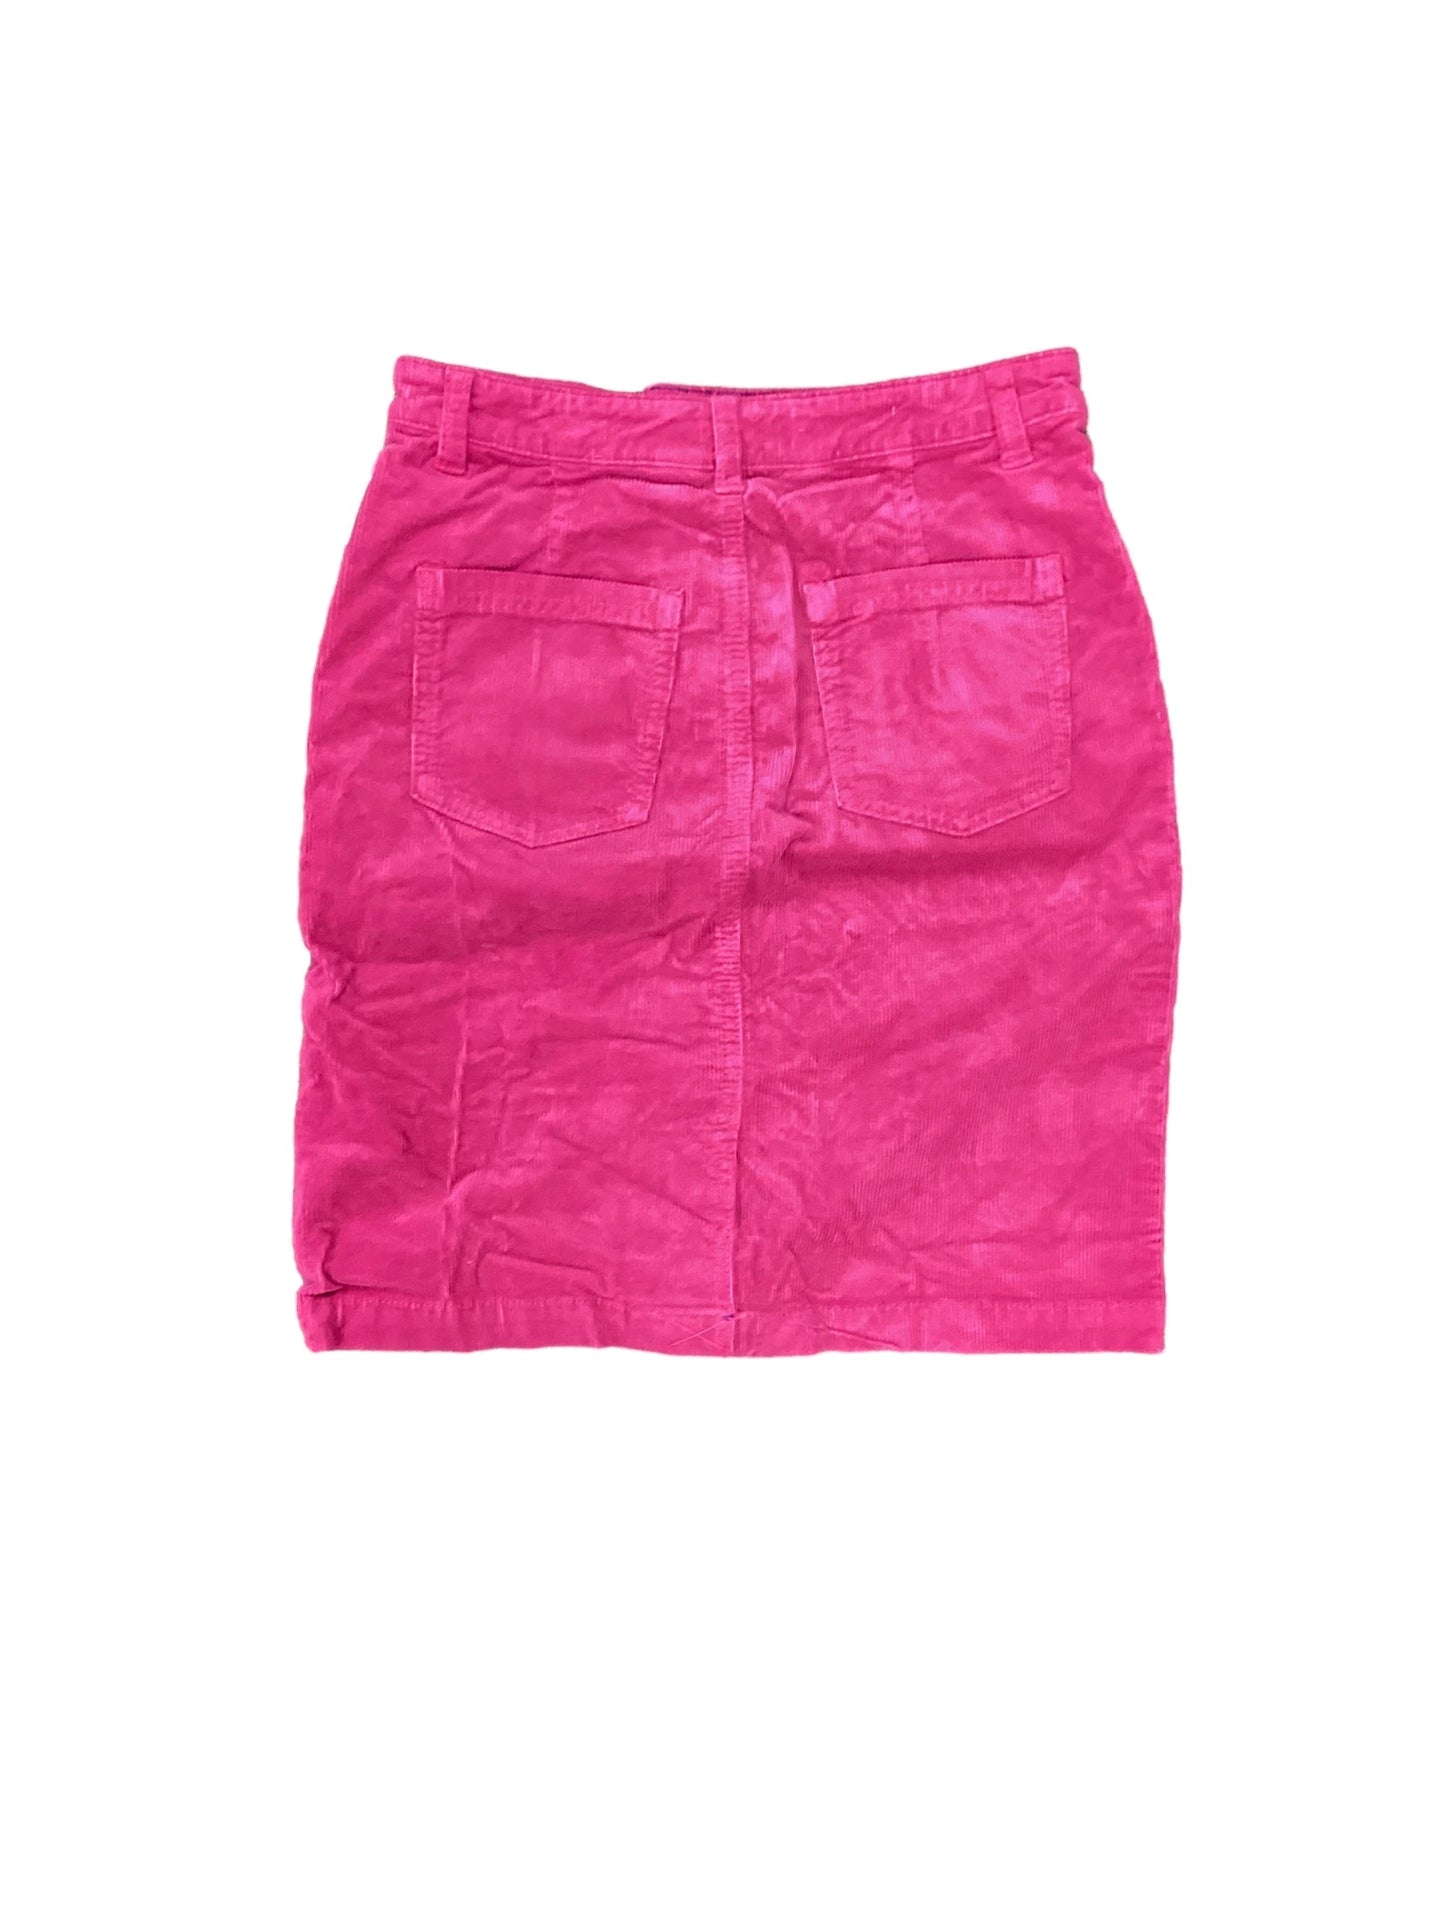 Skirt Mini & Short By Anthropologie  Size: 0